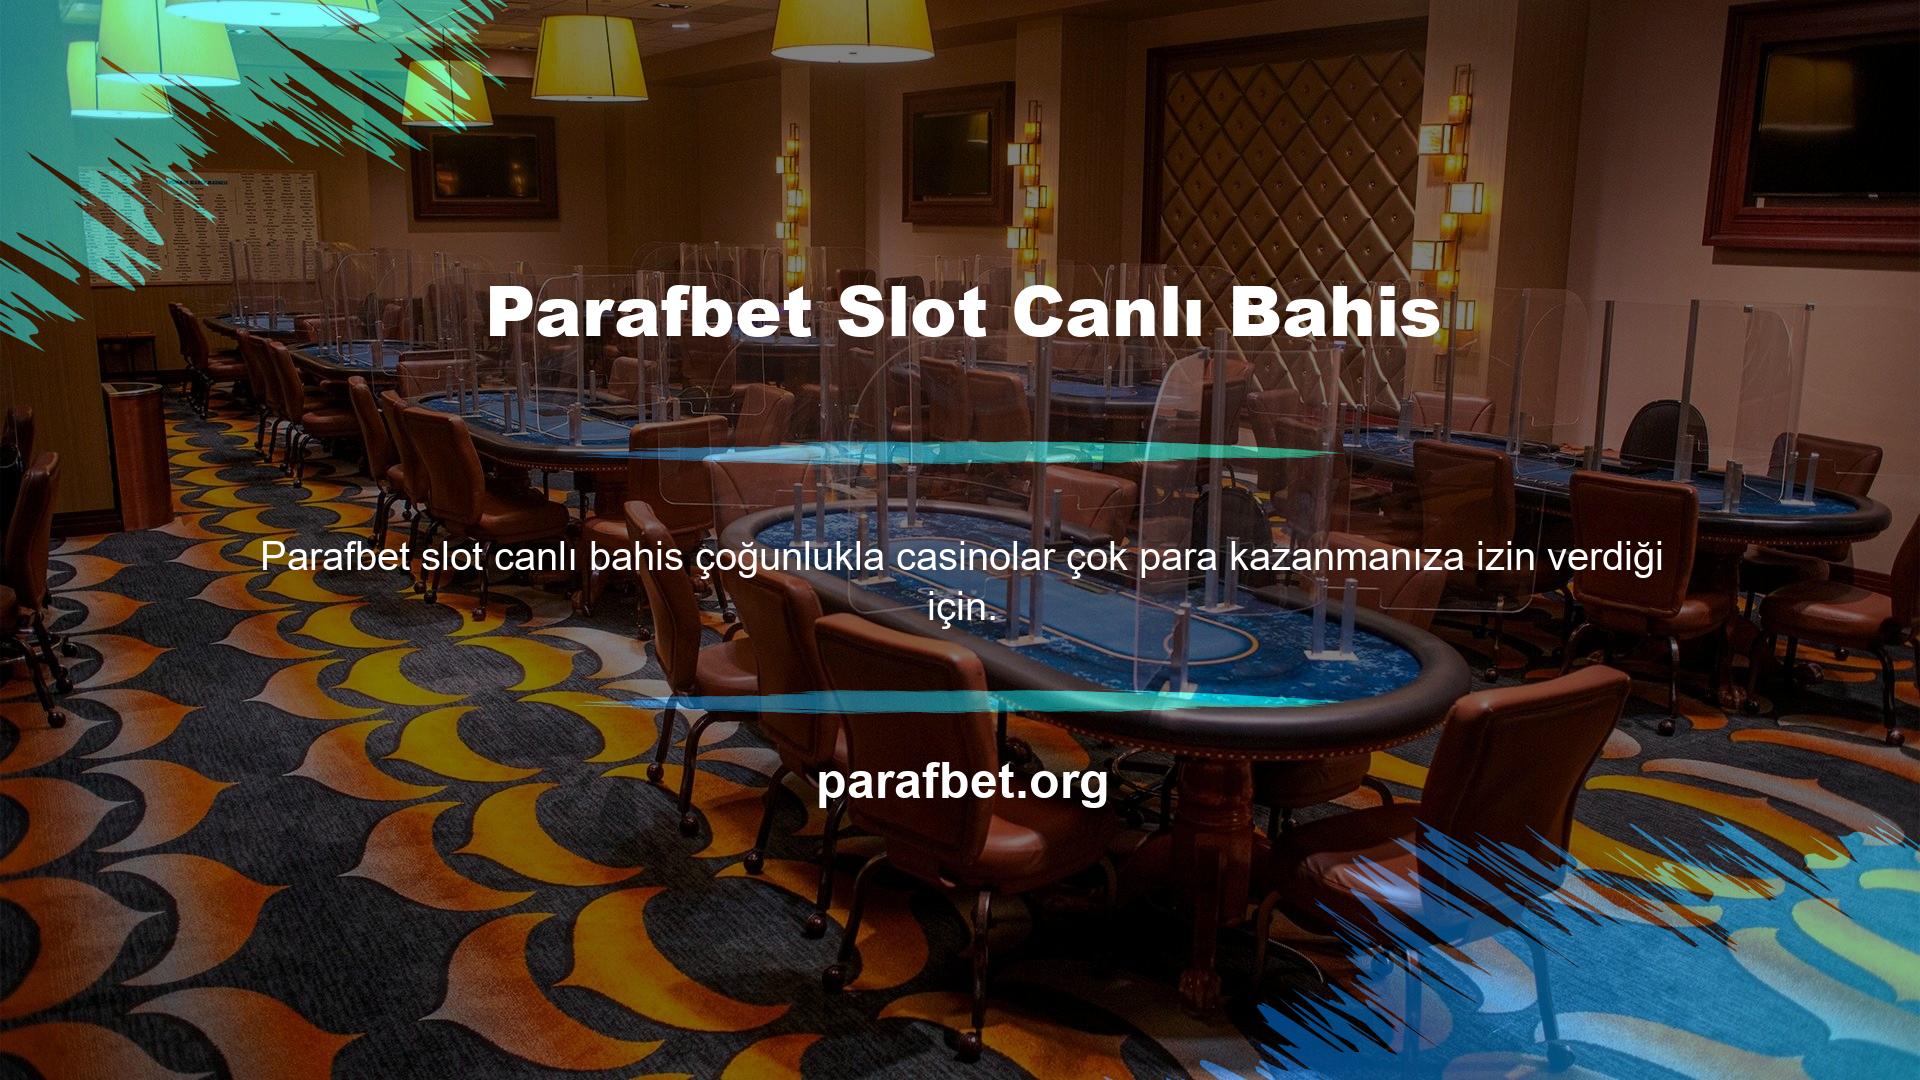 Türk online casino siteleri bu açıdan uygun görülmektedir